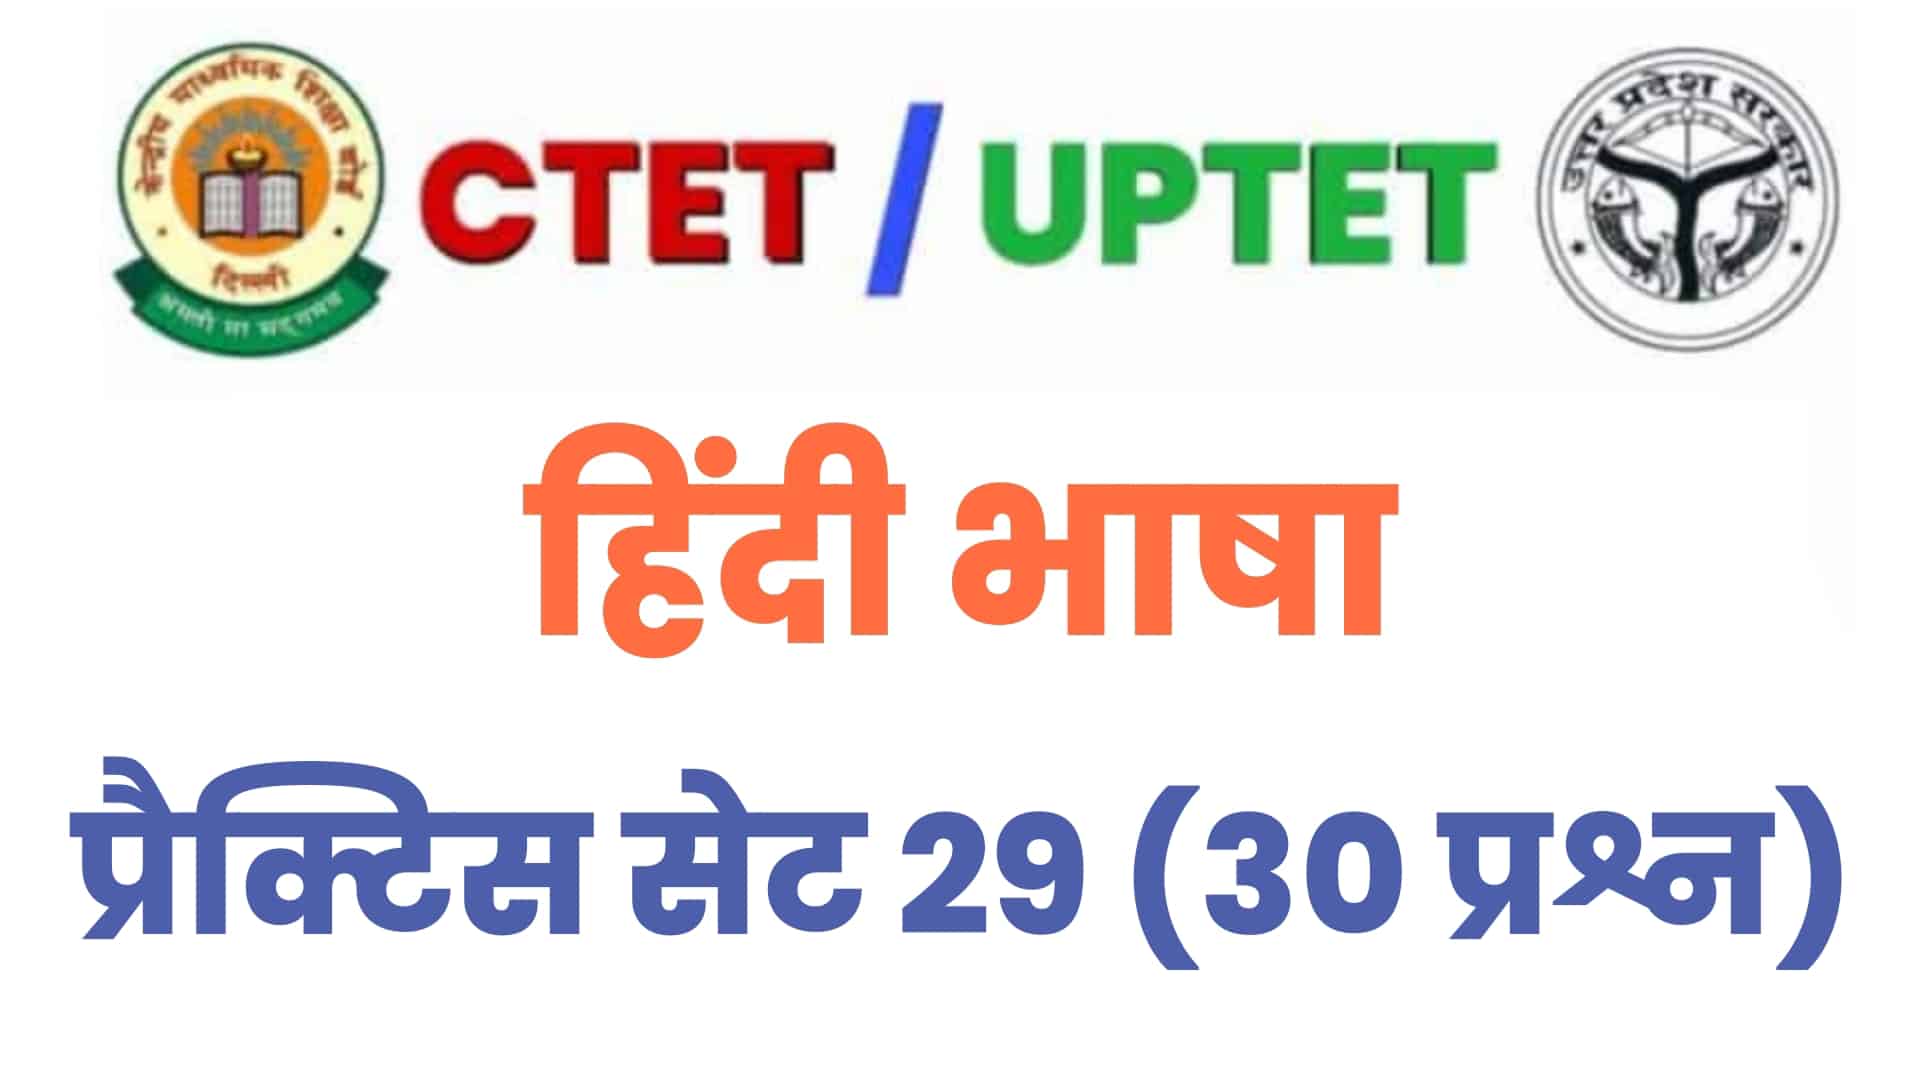 UPTET / CTET हिंदी भाषा प्रैक्टिस सेट 29 : परीक्षा में जाने से पहले इन 30 प्रश्नों का कर लें अध्ययन